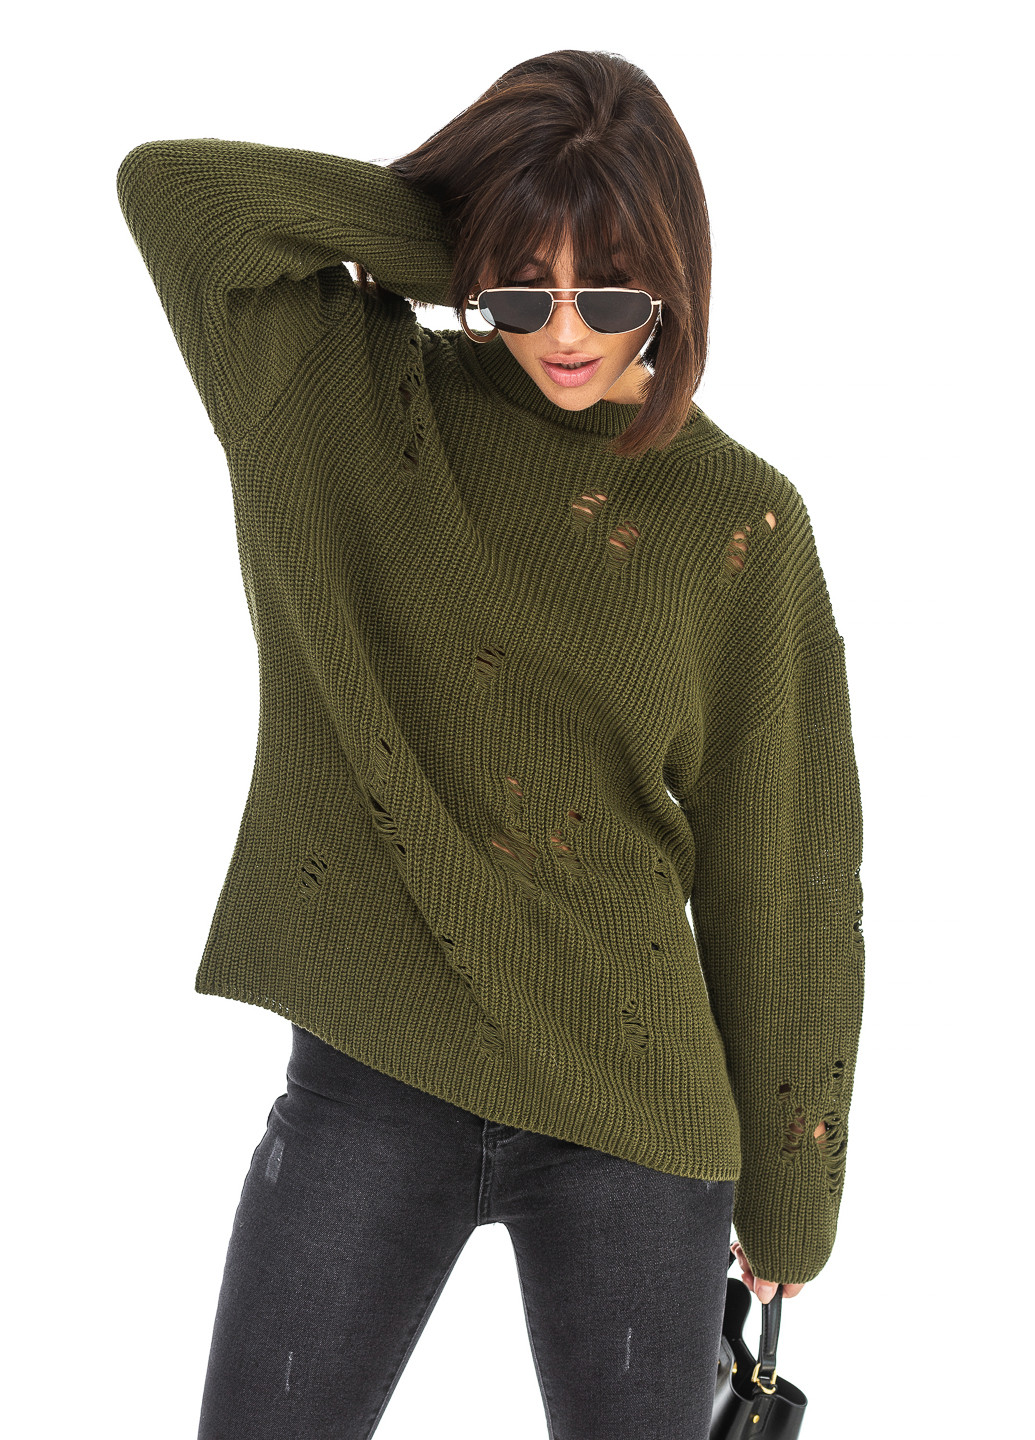 Оливковый (хаки) женский свитер с дырками. SVTR